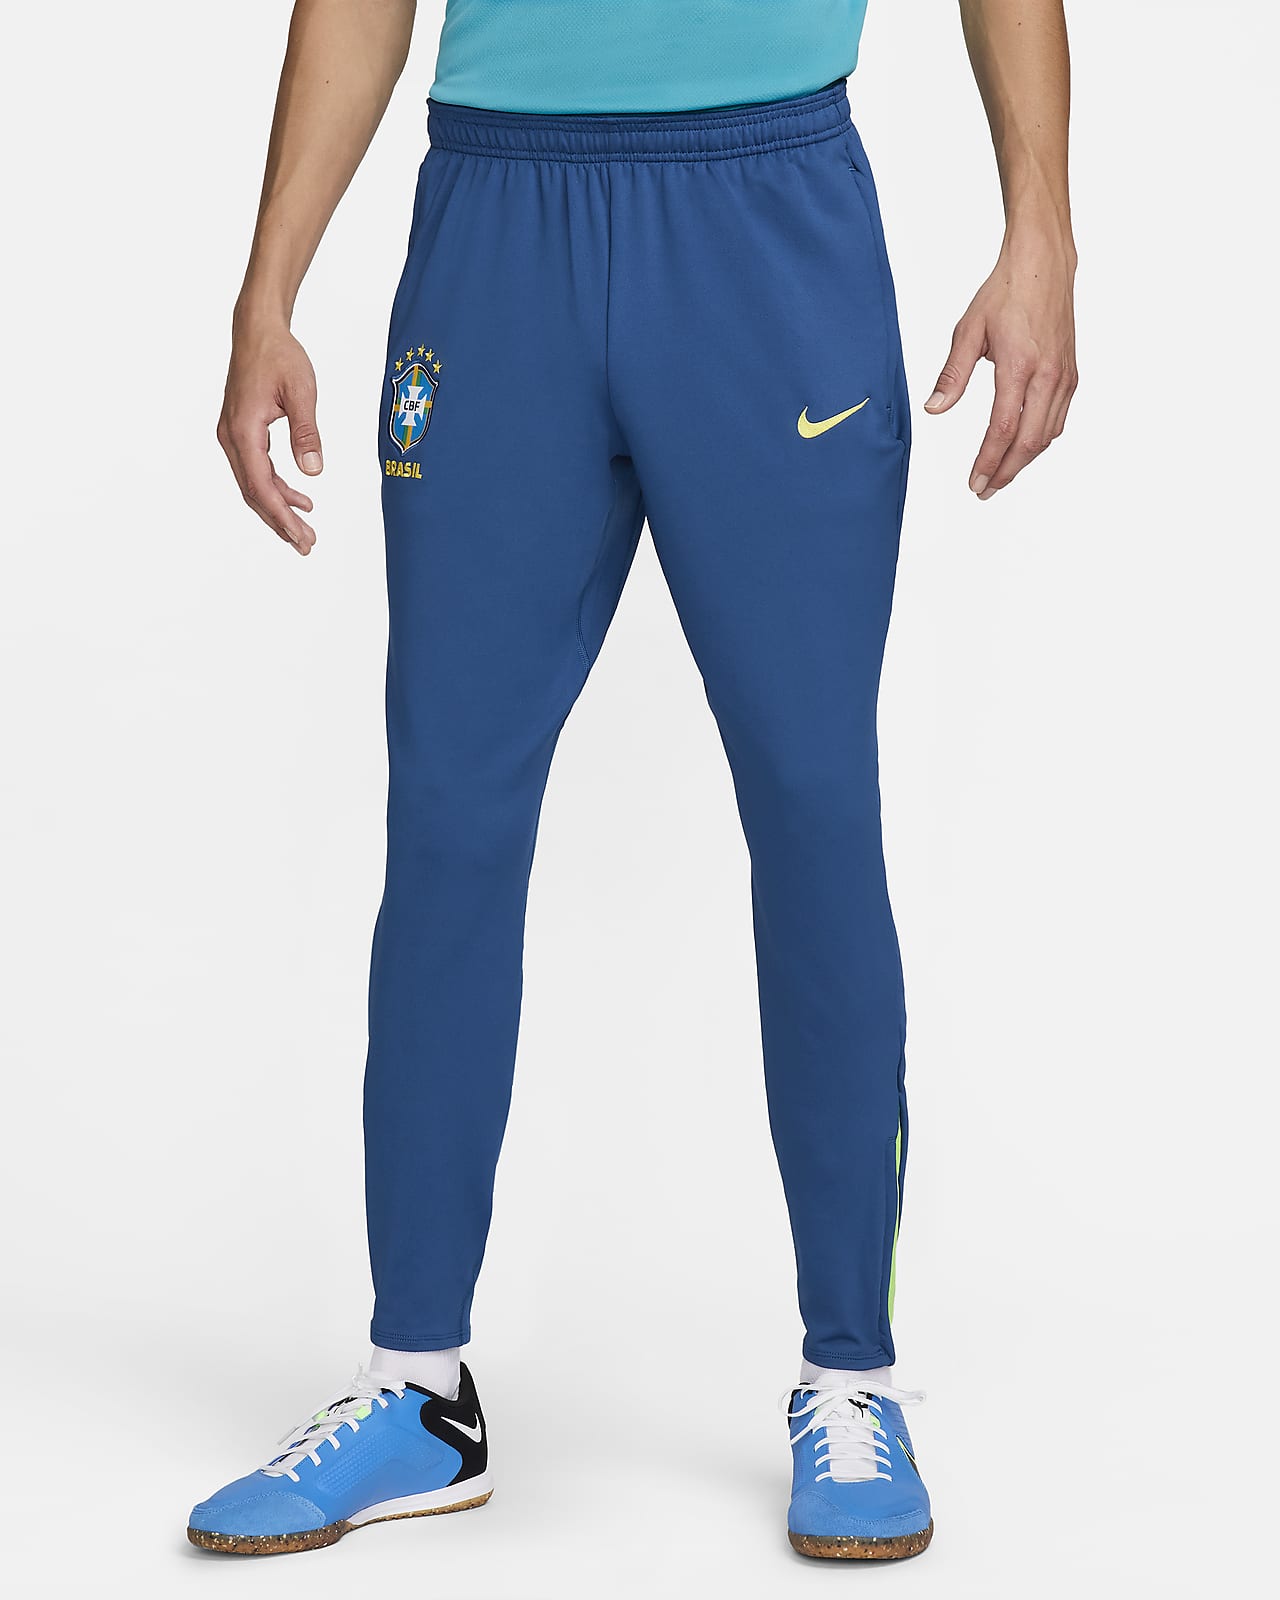 Brazil Strike Men's Nike Dri-FIT Soccer Knit Pants